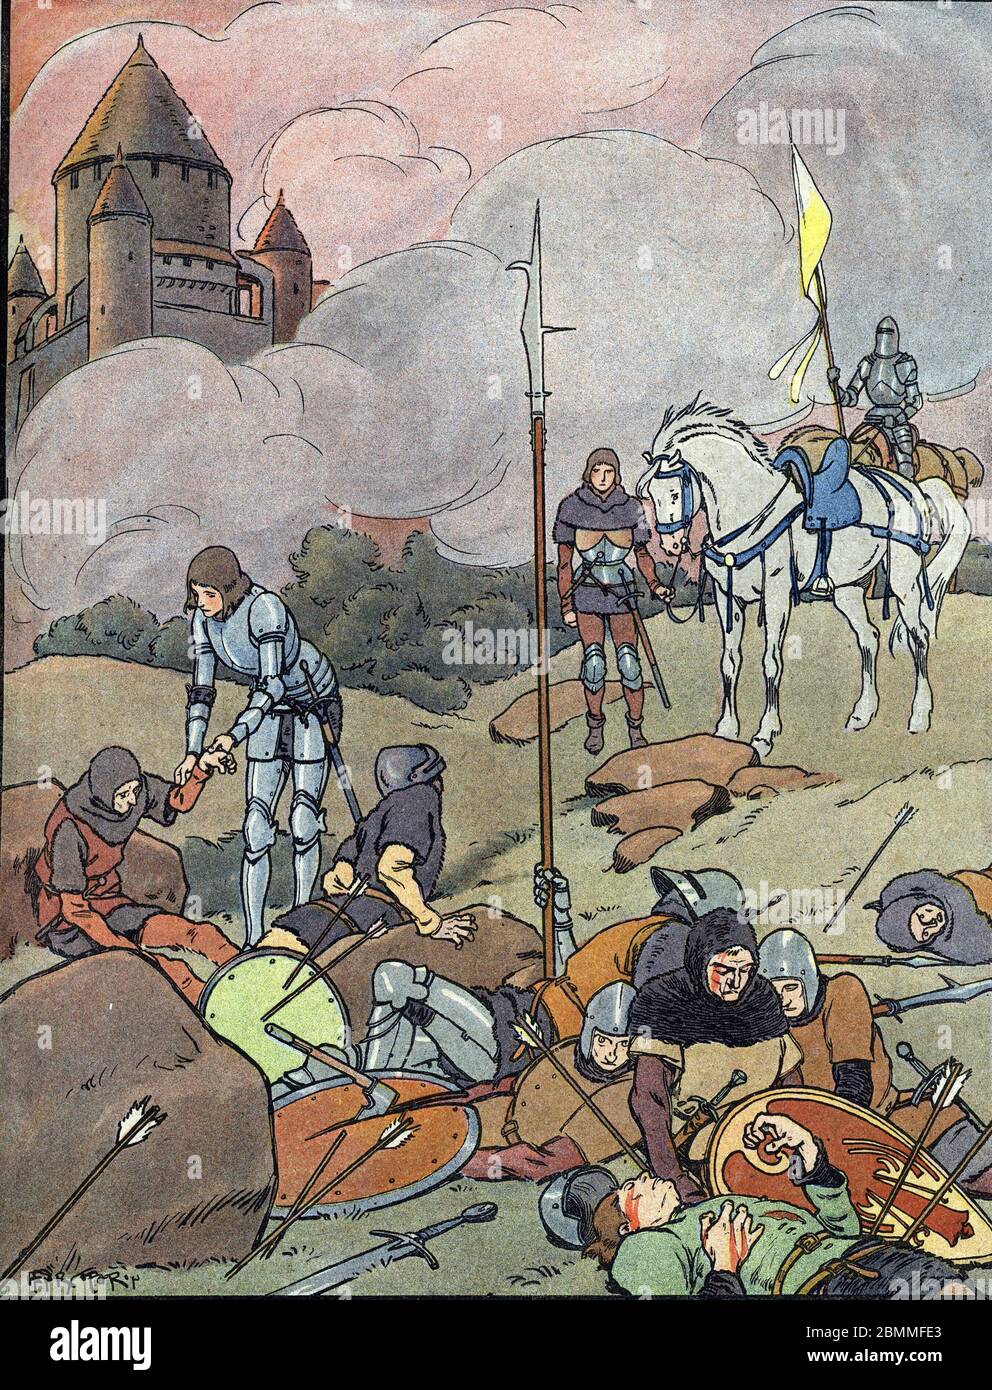 Guerre de cent ans : 'La jeune Jeanne d'Arc (1412-1431) soignant et reconfortant les blesses apres la bataille d' Orleans, 1429'  (War of Hundred year Stock Photo